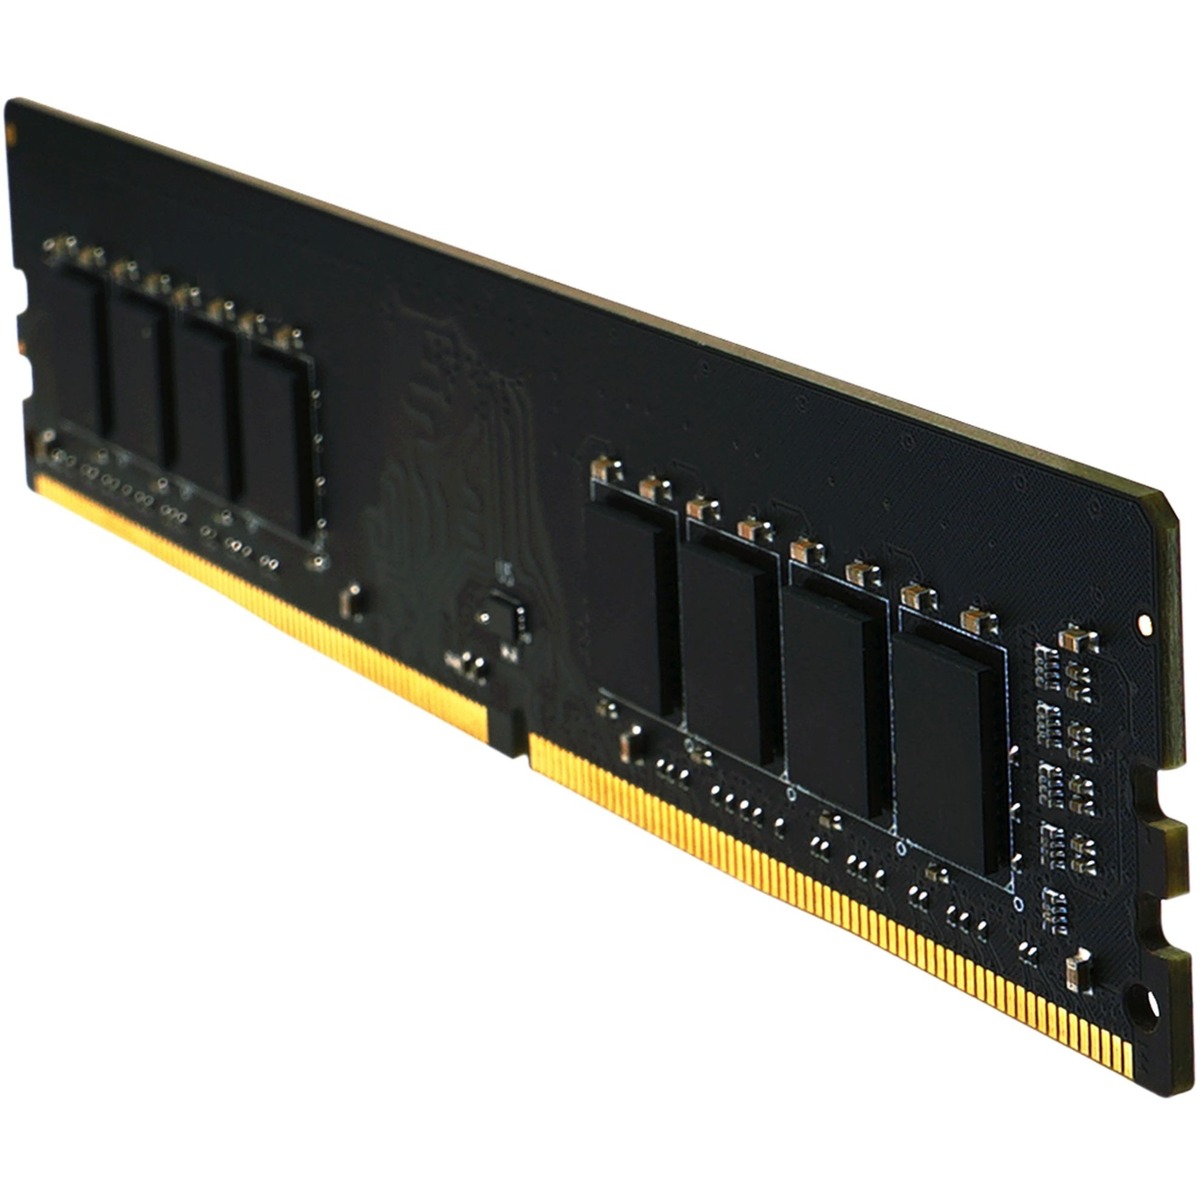 Память DDR4 32GB 2666MHz Silicon Power SP032GBLFU266F02